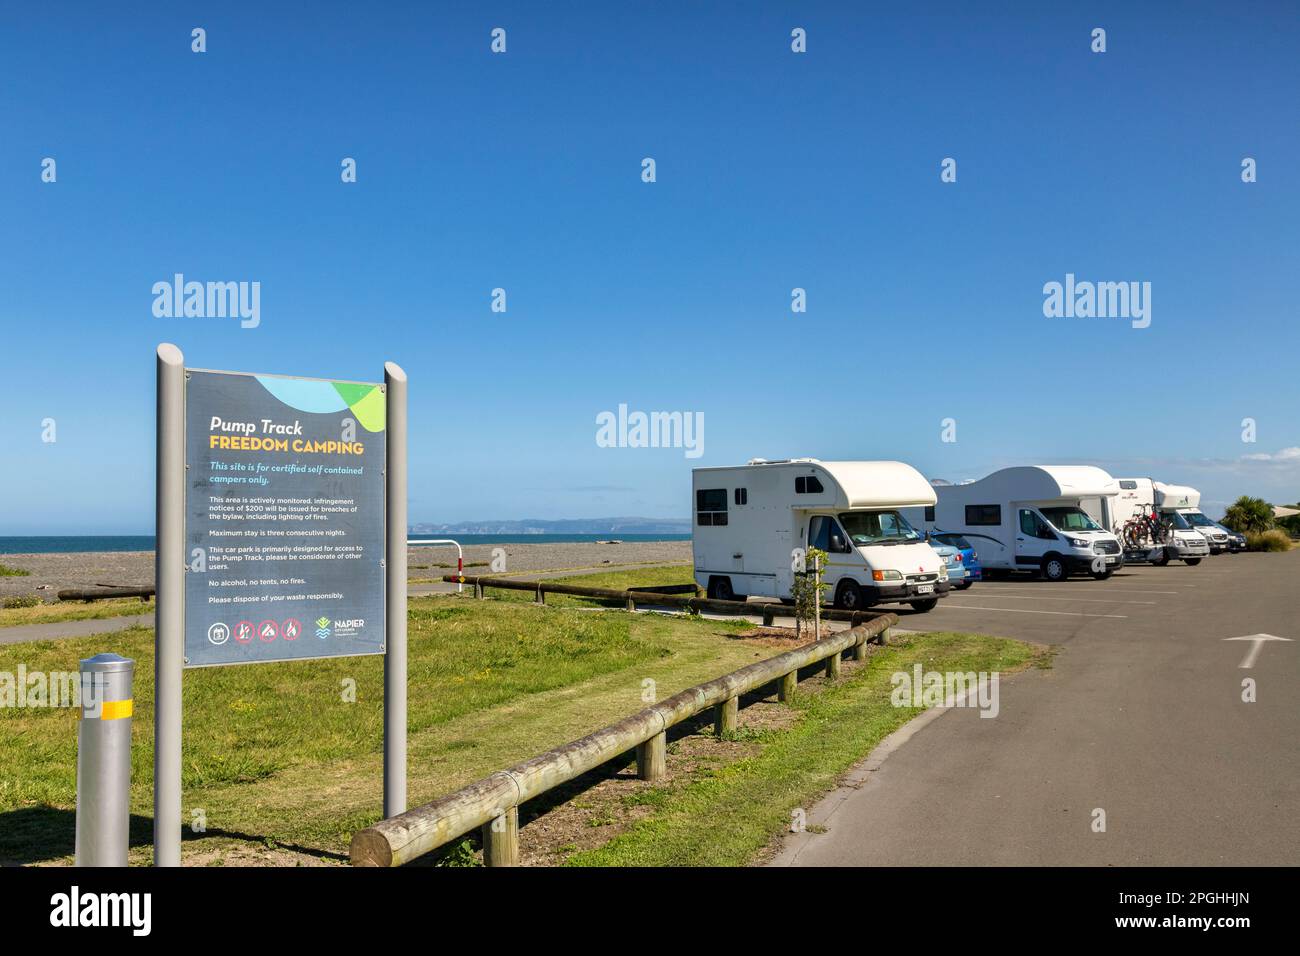 5 décembre 2022: Napier, Hawkes Bay, Nouvelle-Zélande - les camping-cars et les camping-cars sont alignés dans une zone de camping de la liberté sur Marine Parade, Napier, Nouvelle-Zélande Banque D'Images